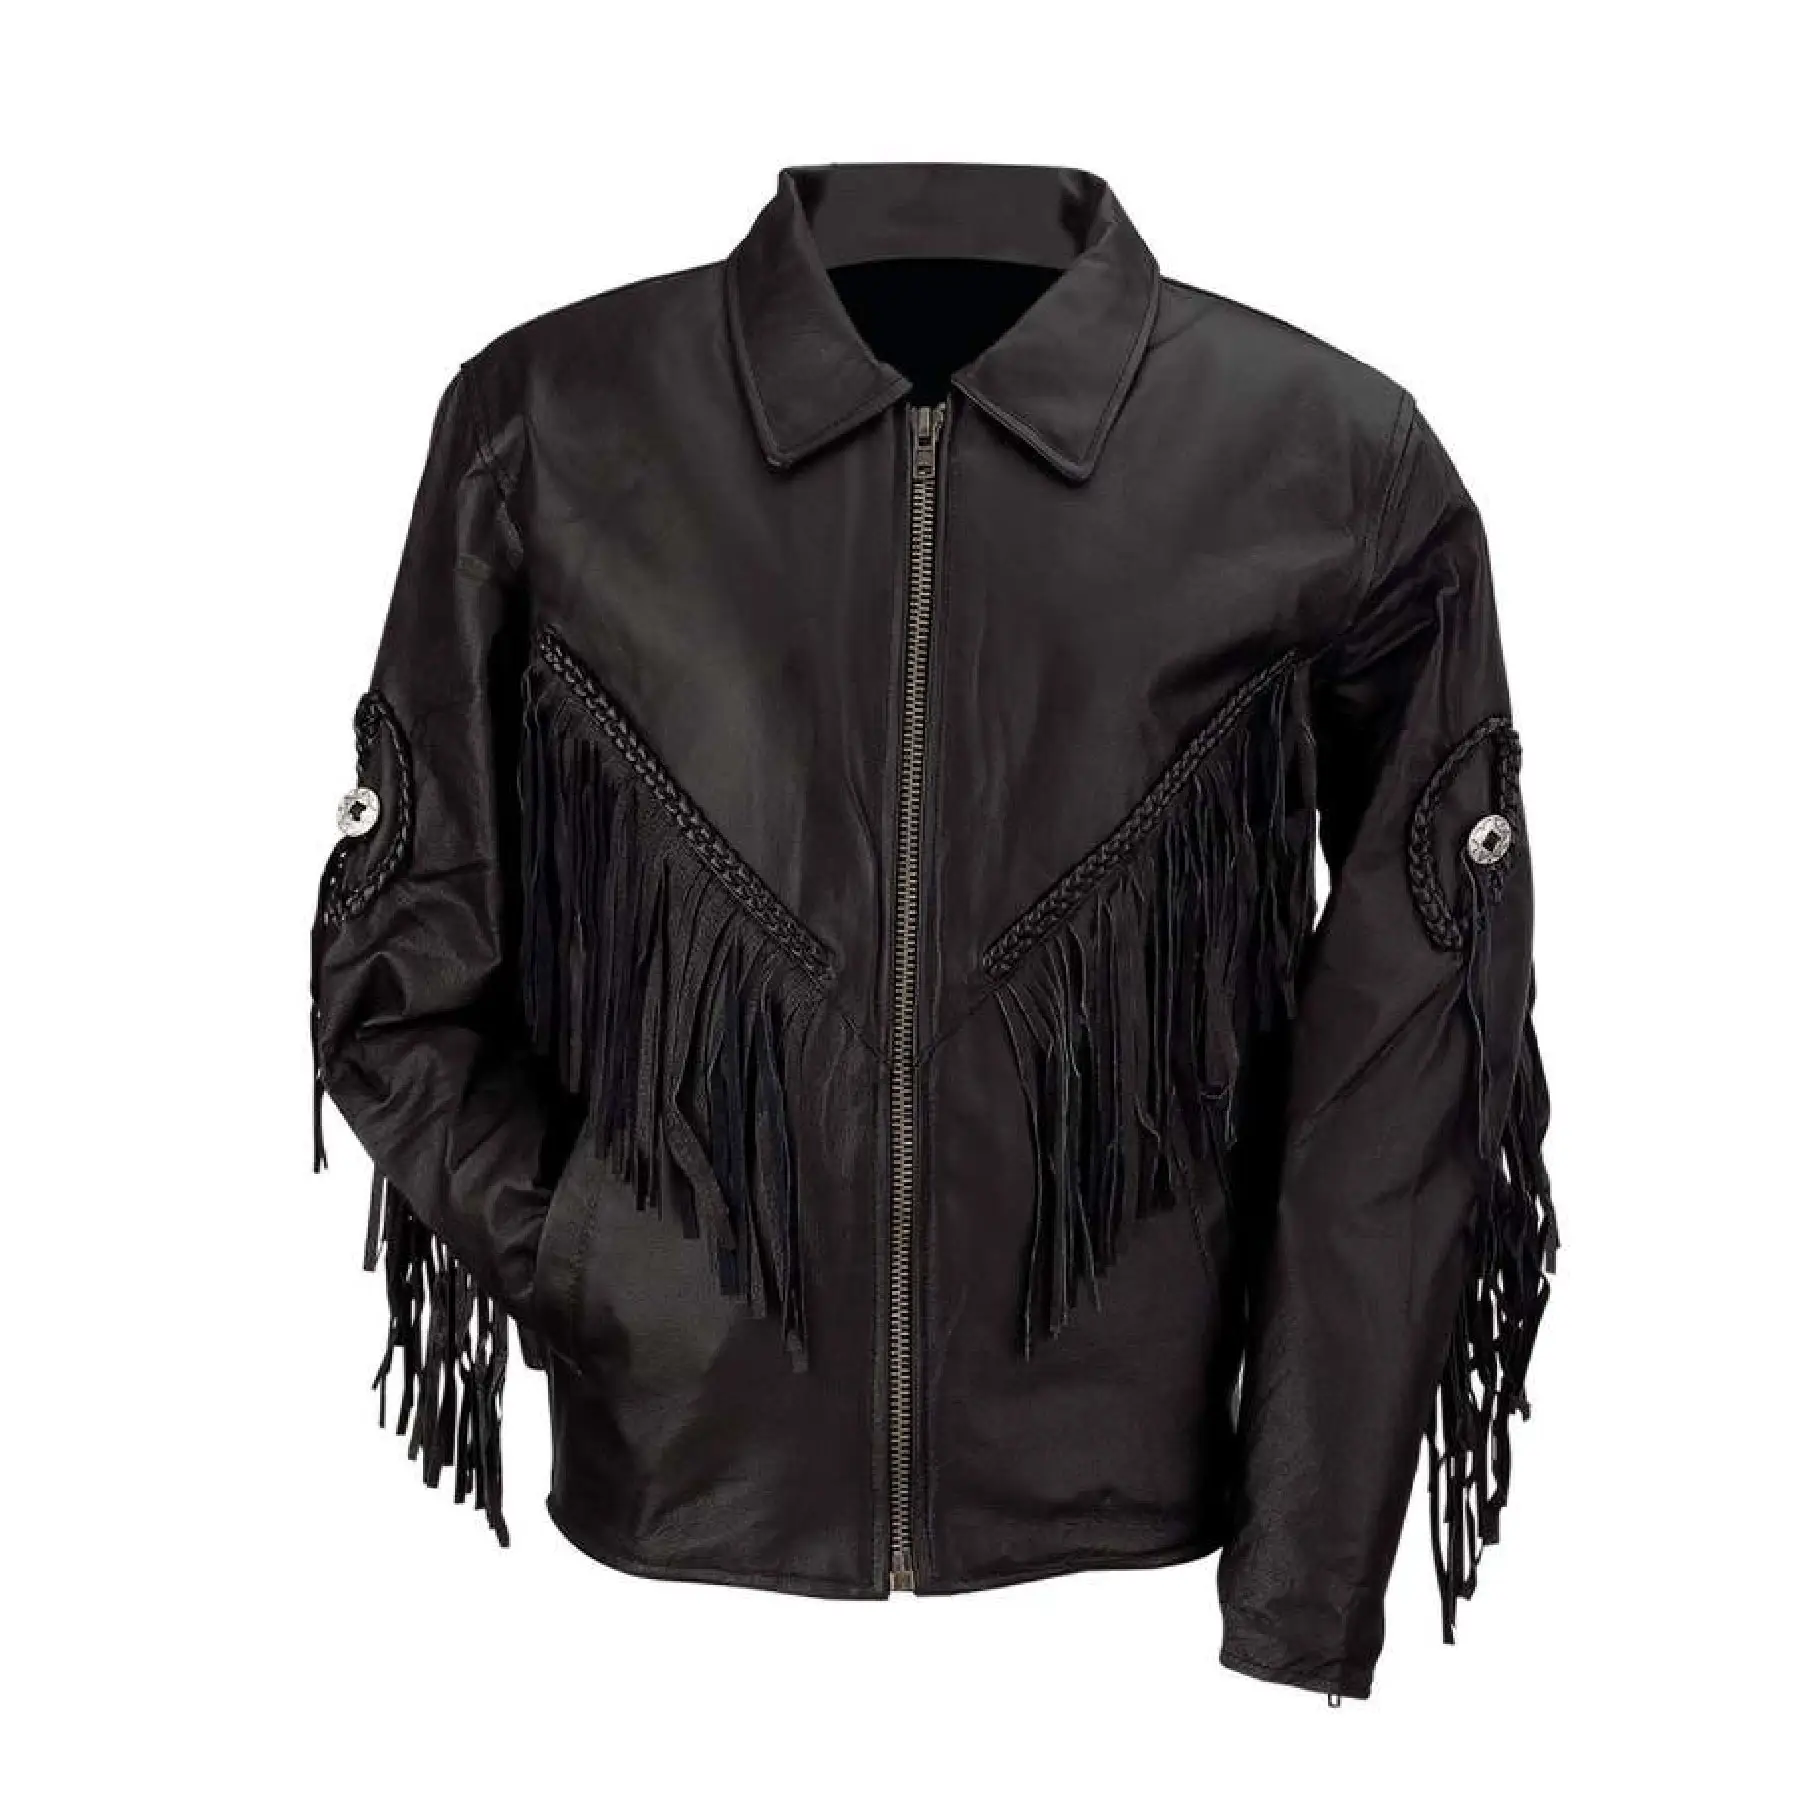 Modische Quaste Premium Qualität Schwarzes Leder Stilvolle Jacke volle Ärmel mit Turn-Down-Kragen Großhandel günstigen Preis Unisex